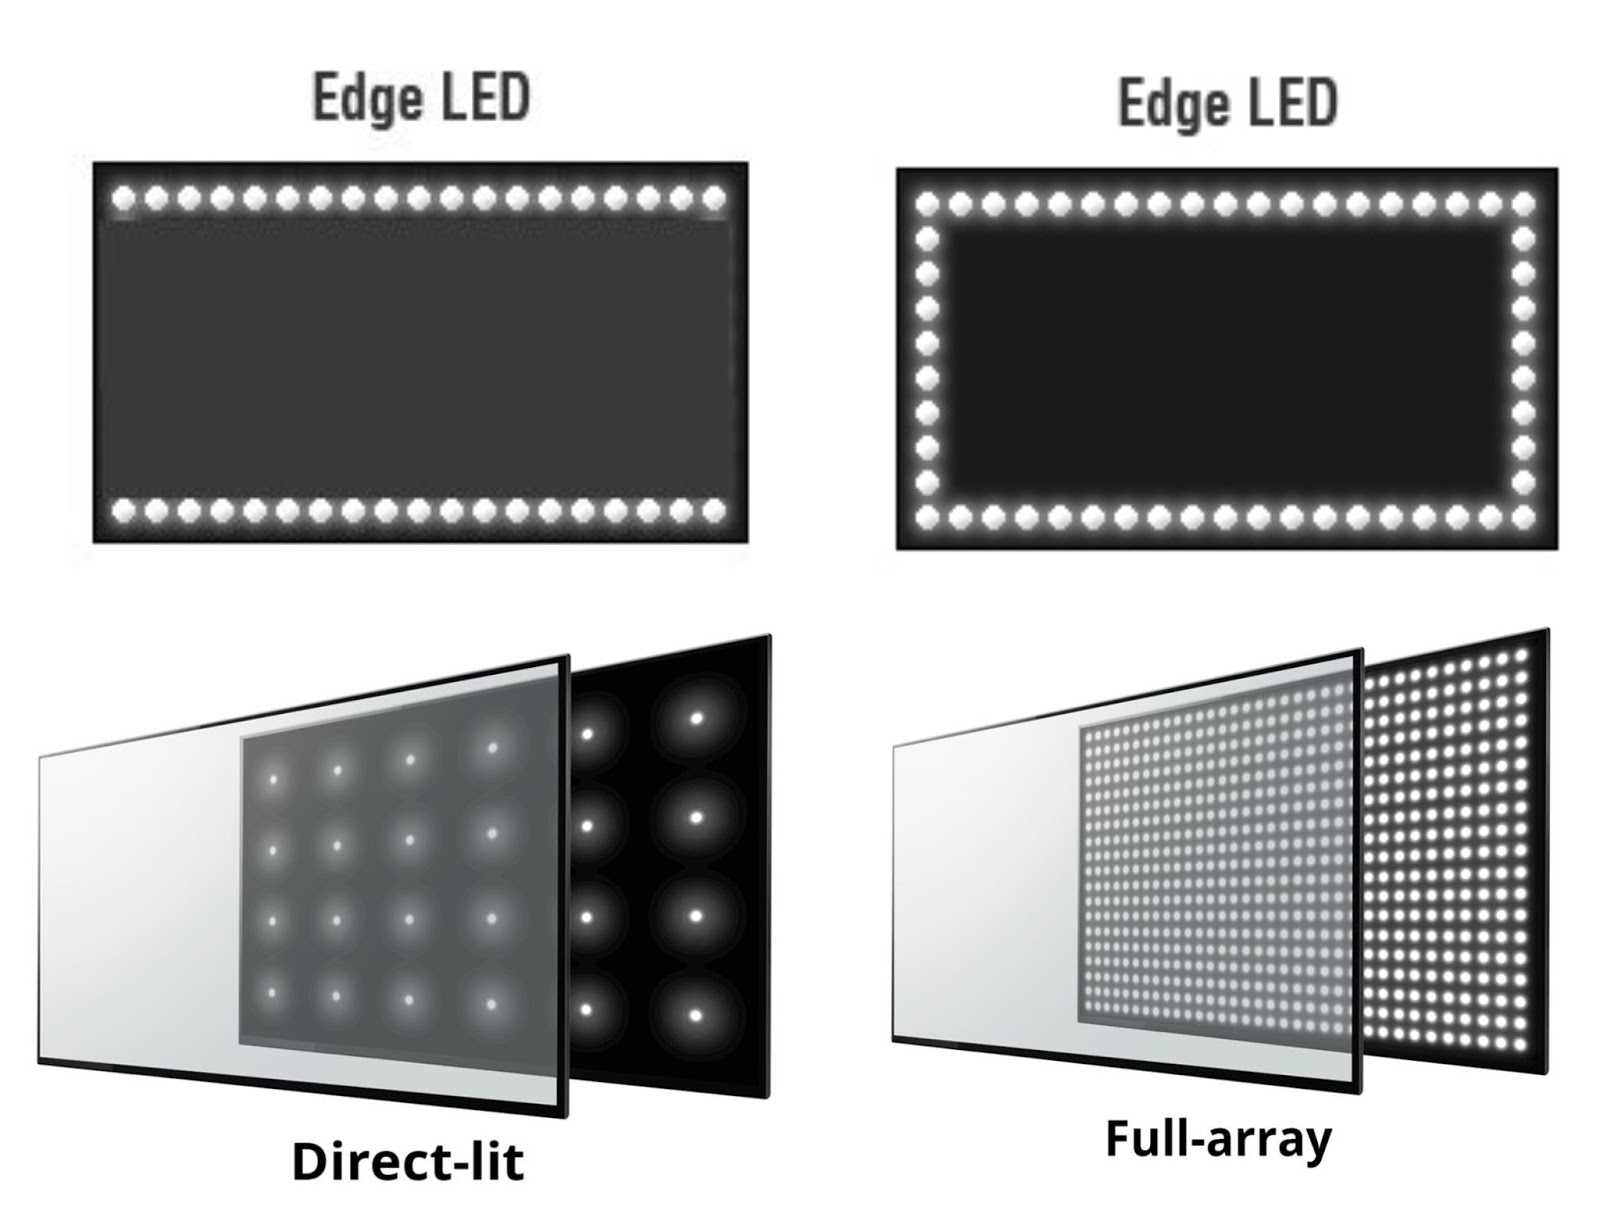 LED-электроника в настоящее время стала весьма популярной за совсем короткий промежуток времени. Лэд-экран позволяет отображать такого рода информацию, где изображение (картинка) формируется при помощи множества светодиодов полупроводникового типа.